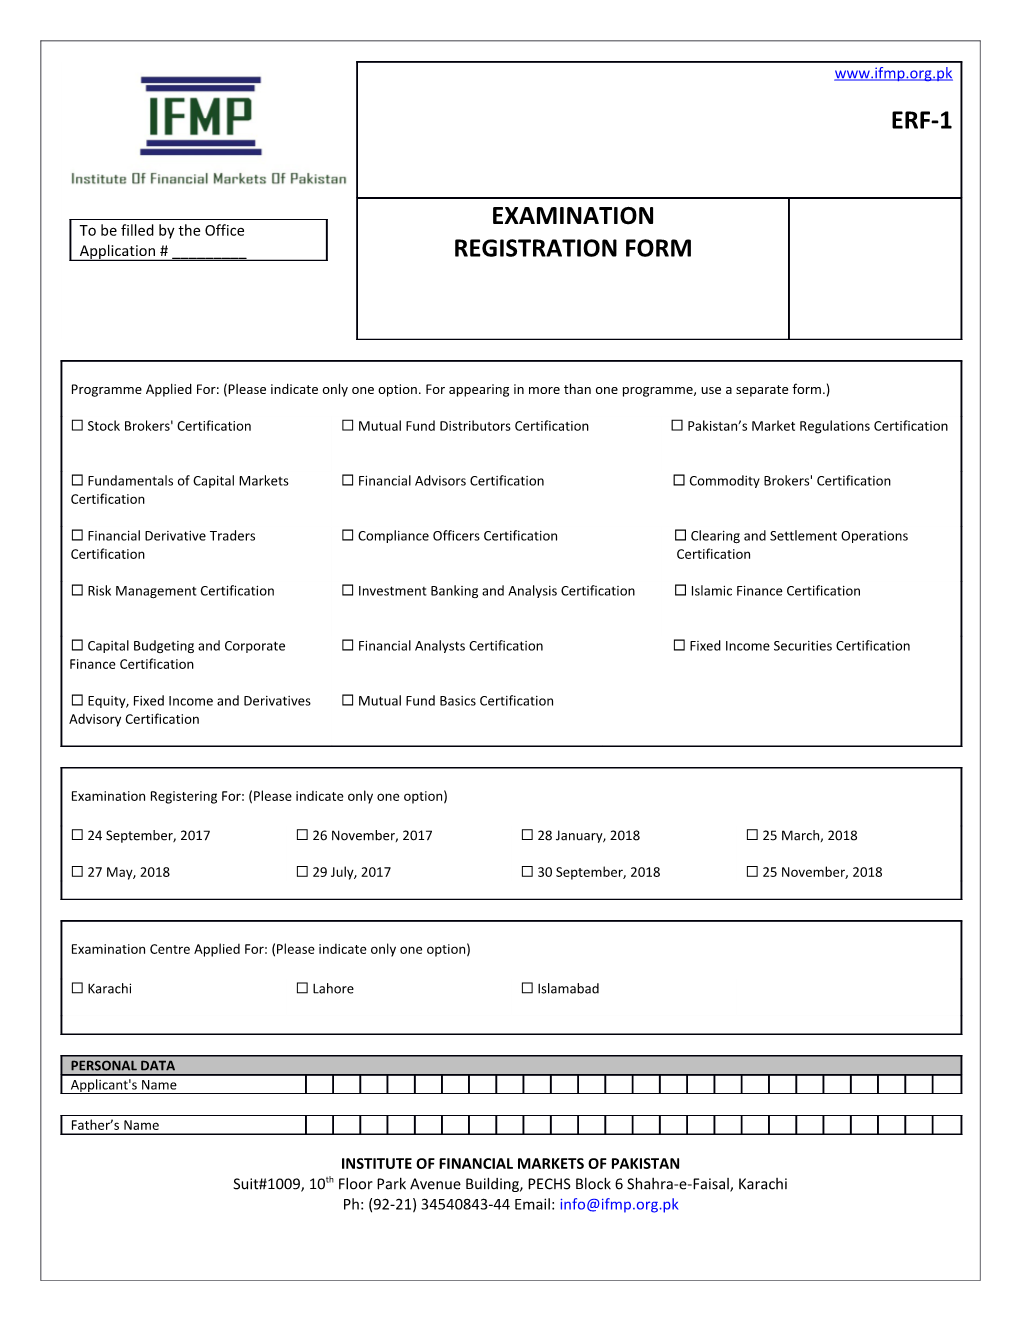 Examination Registration Form